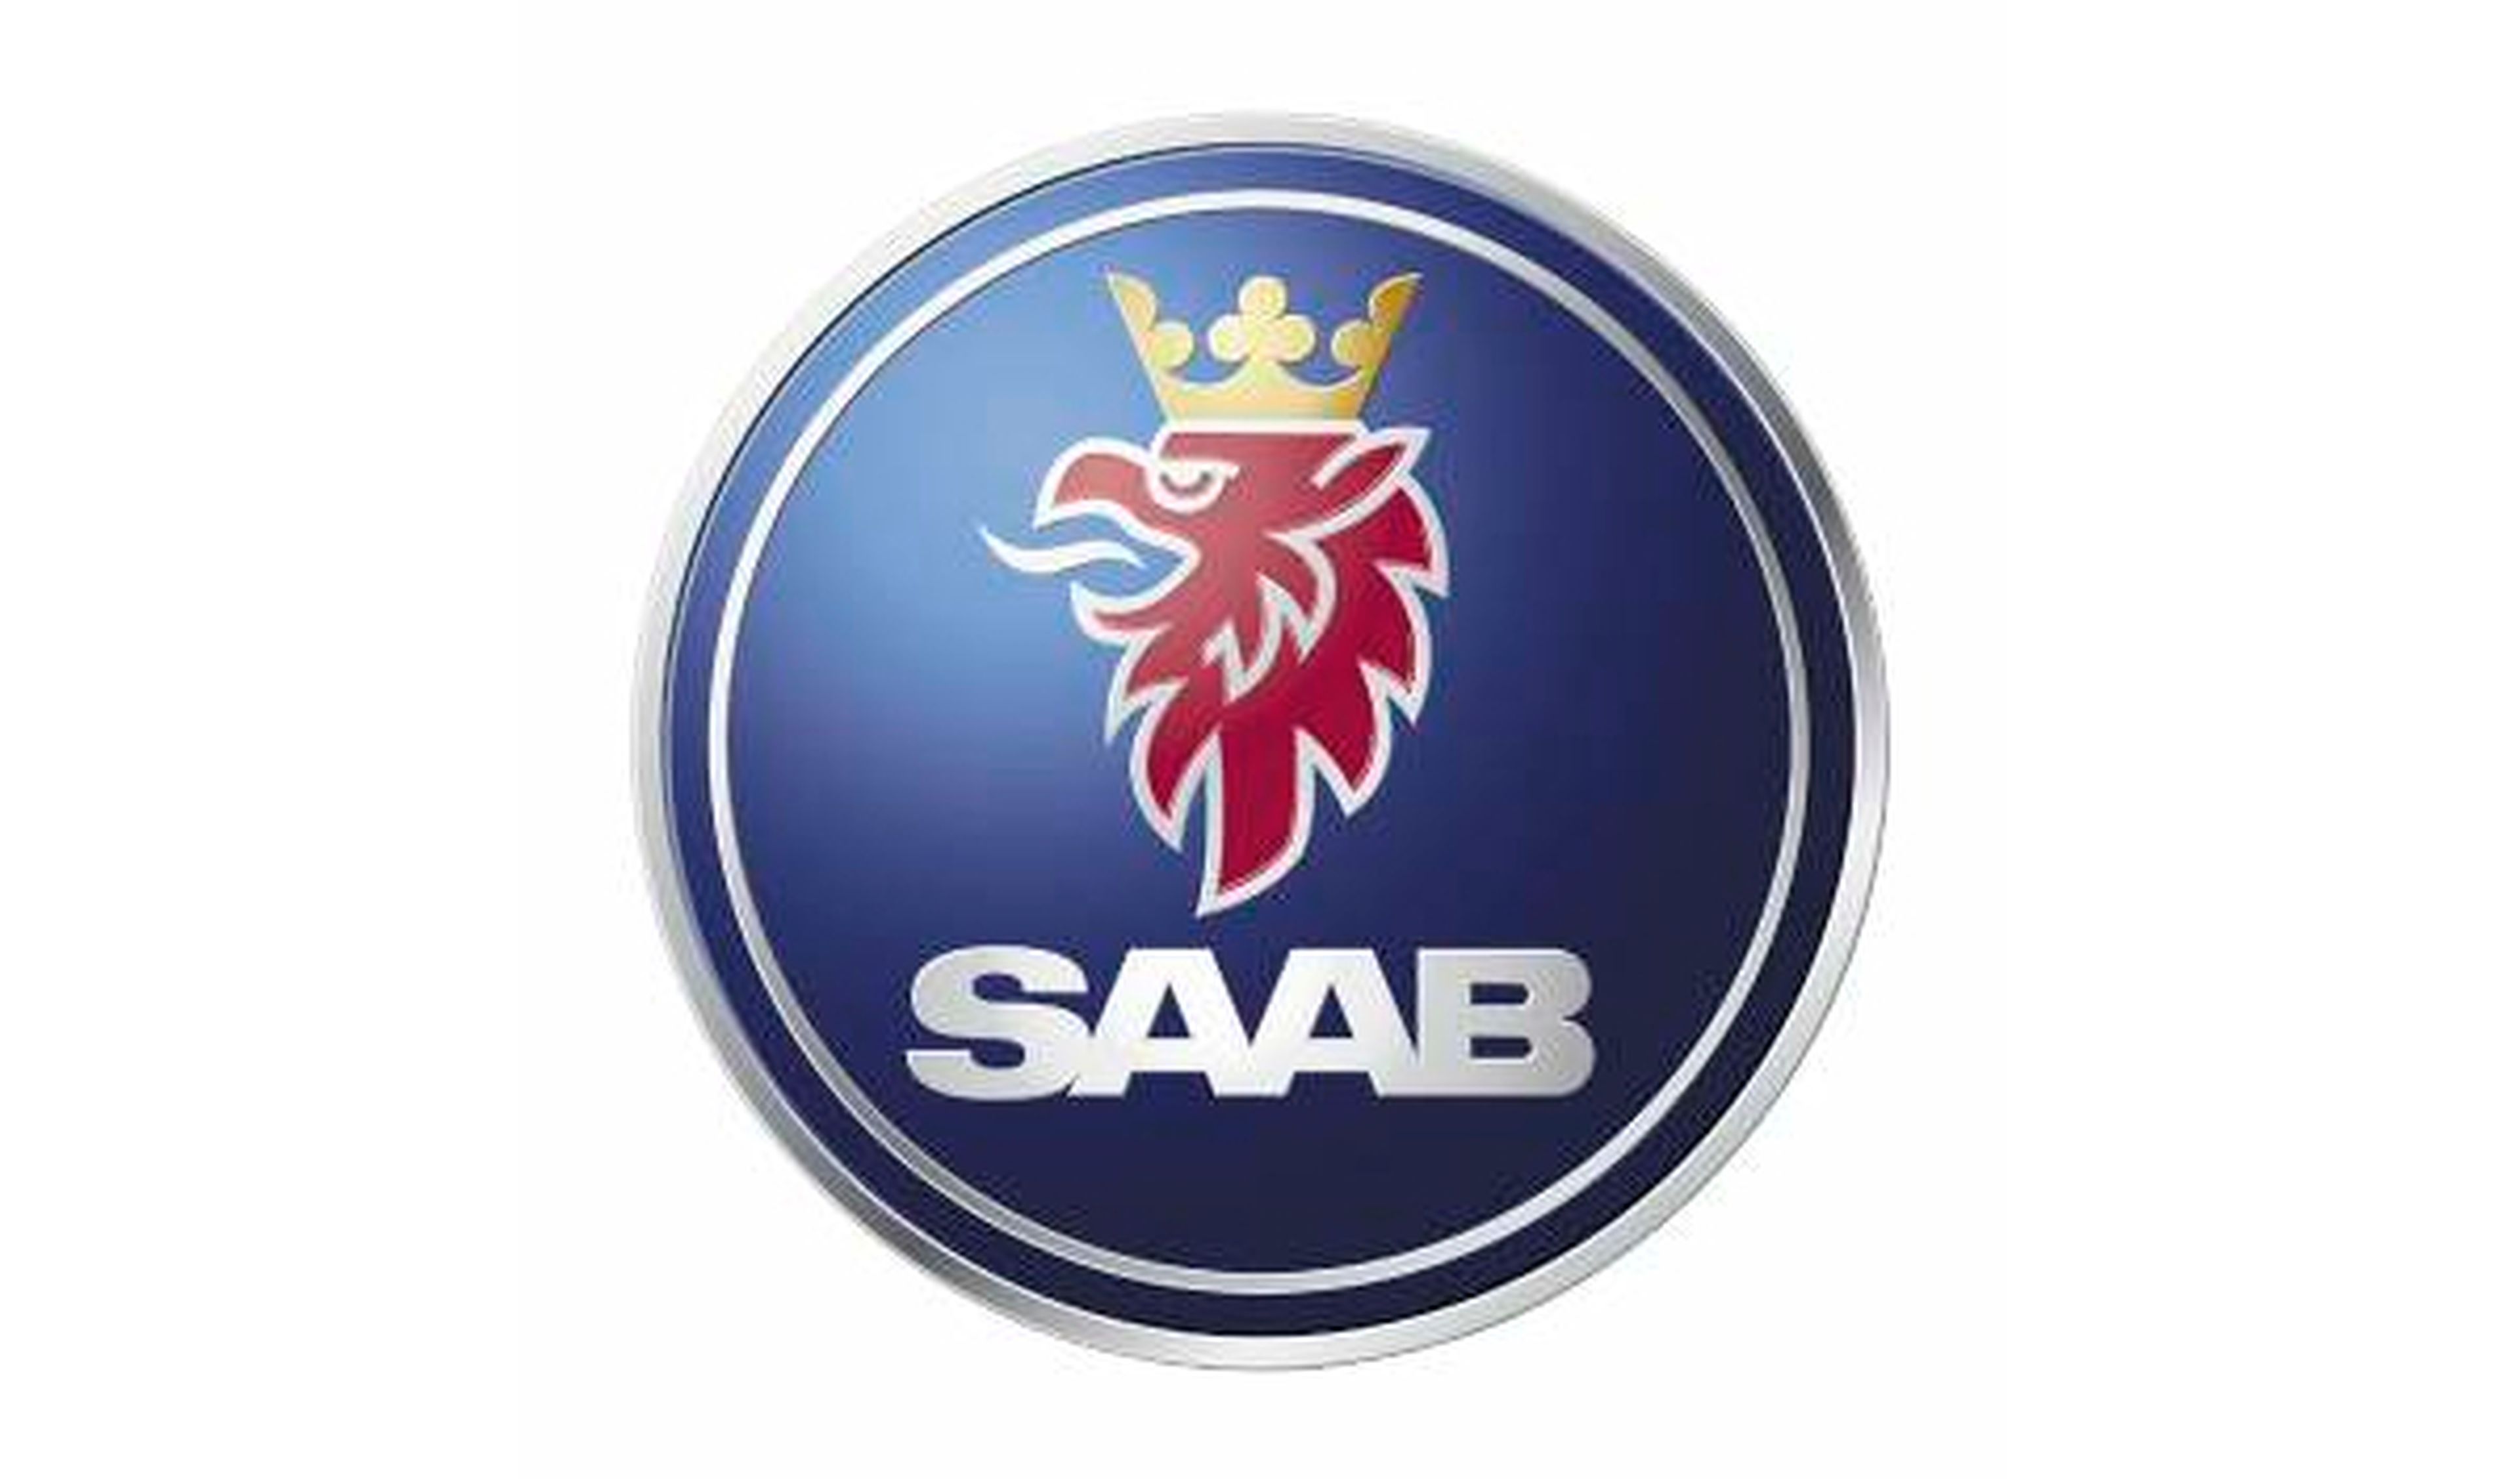 Saab es vendida a National Electric Vehicle Sweden AB